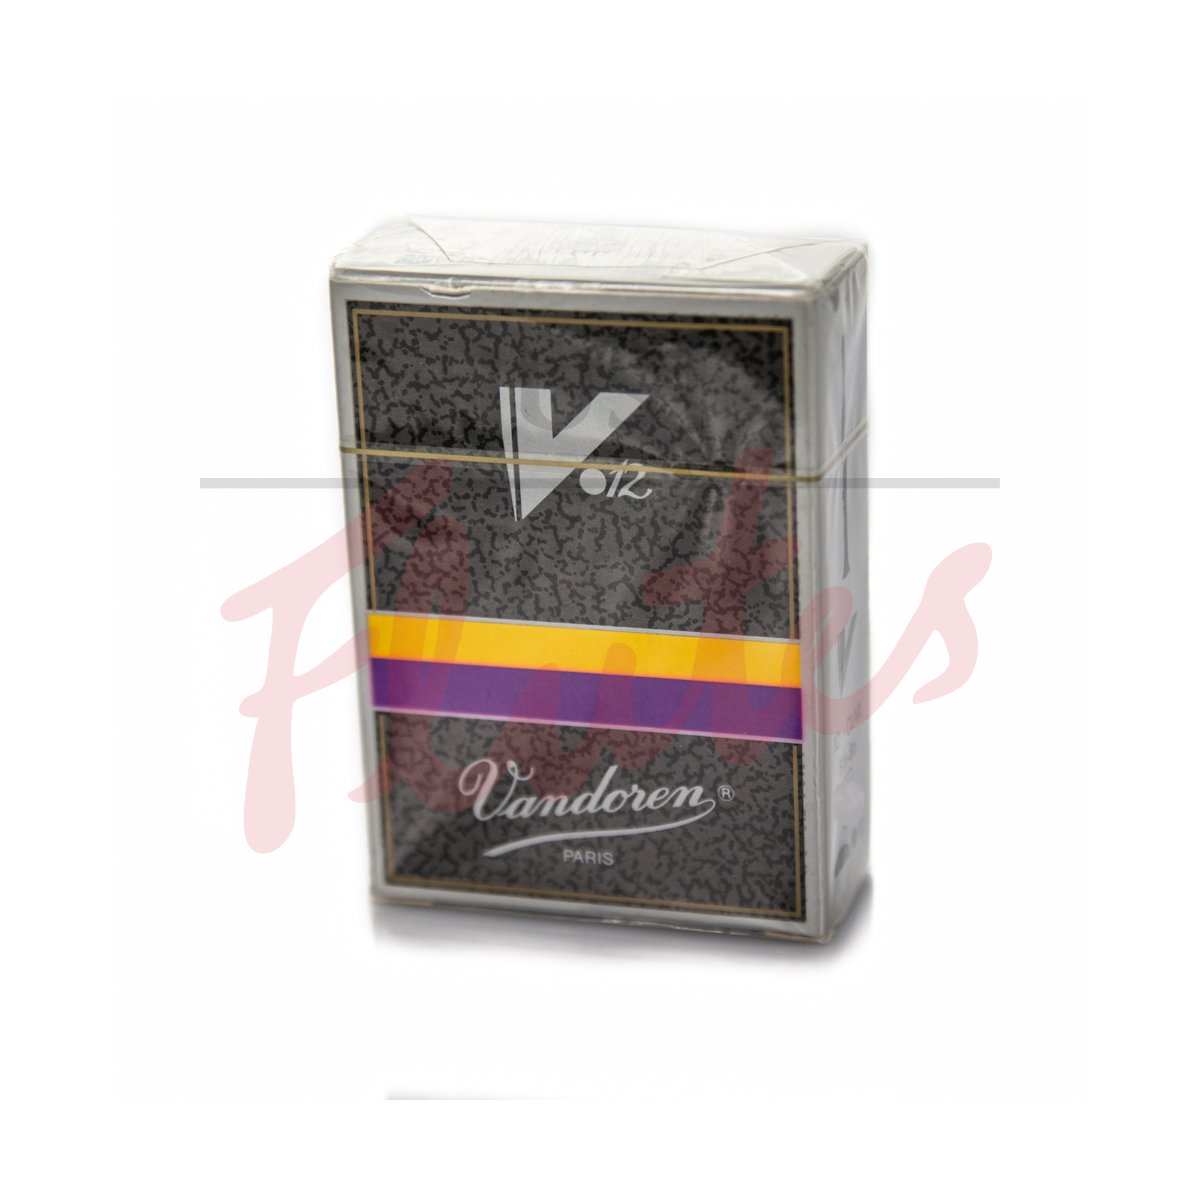 Vandoren CR1945 V12 Clarinet Reeds, Strength 4.5, 10-Pack [Old Packaging]